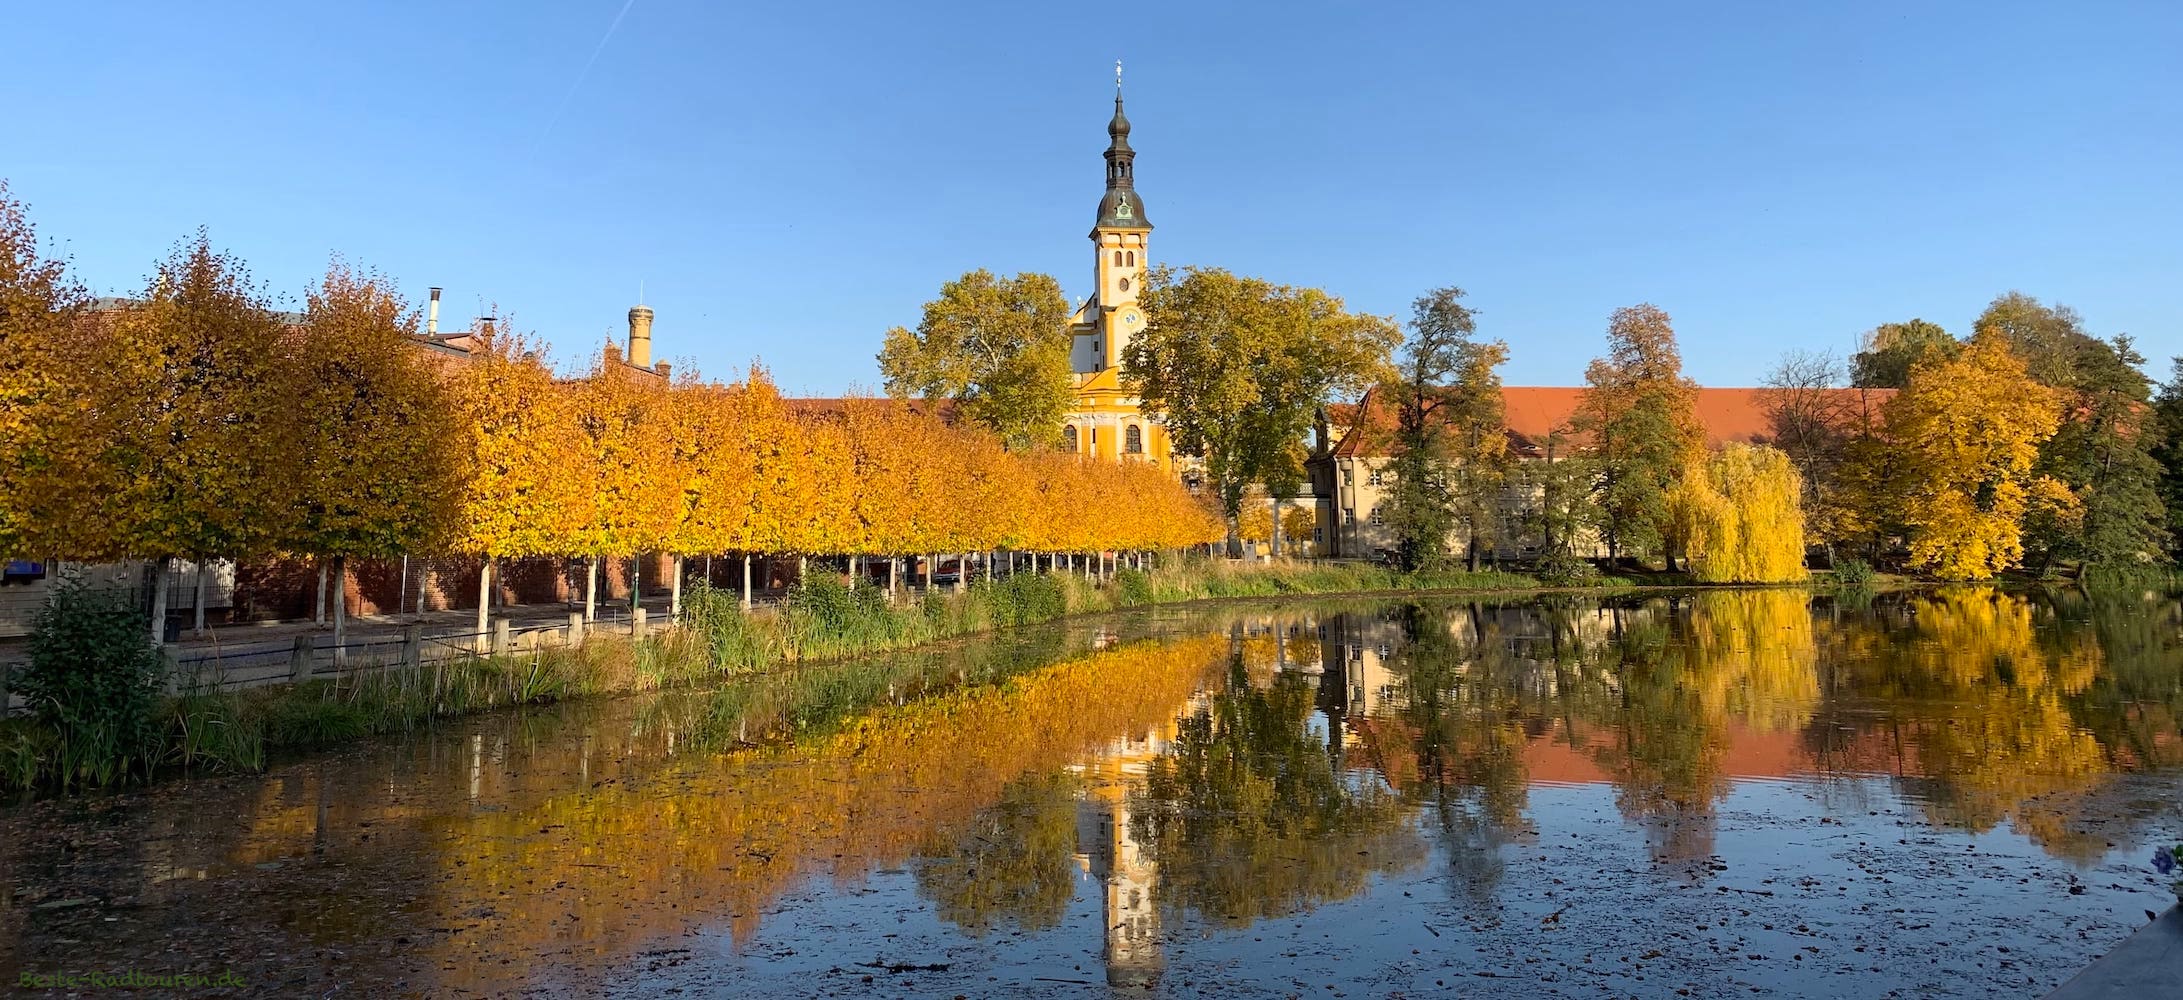 Kloster Neuzelle im Herbst, im Vordergrund der Klosterteich, Foto von vorn